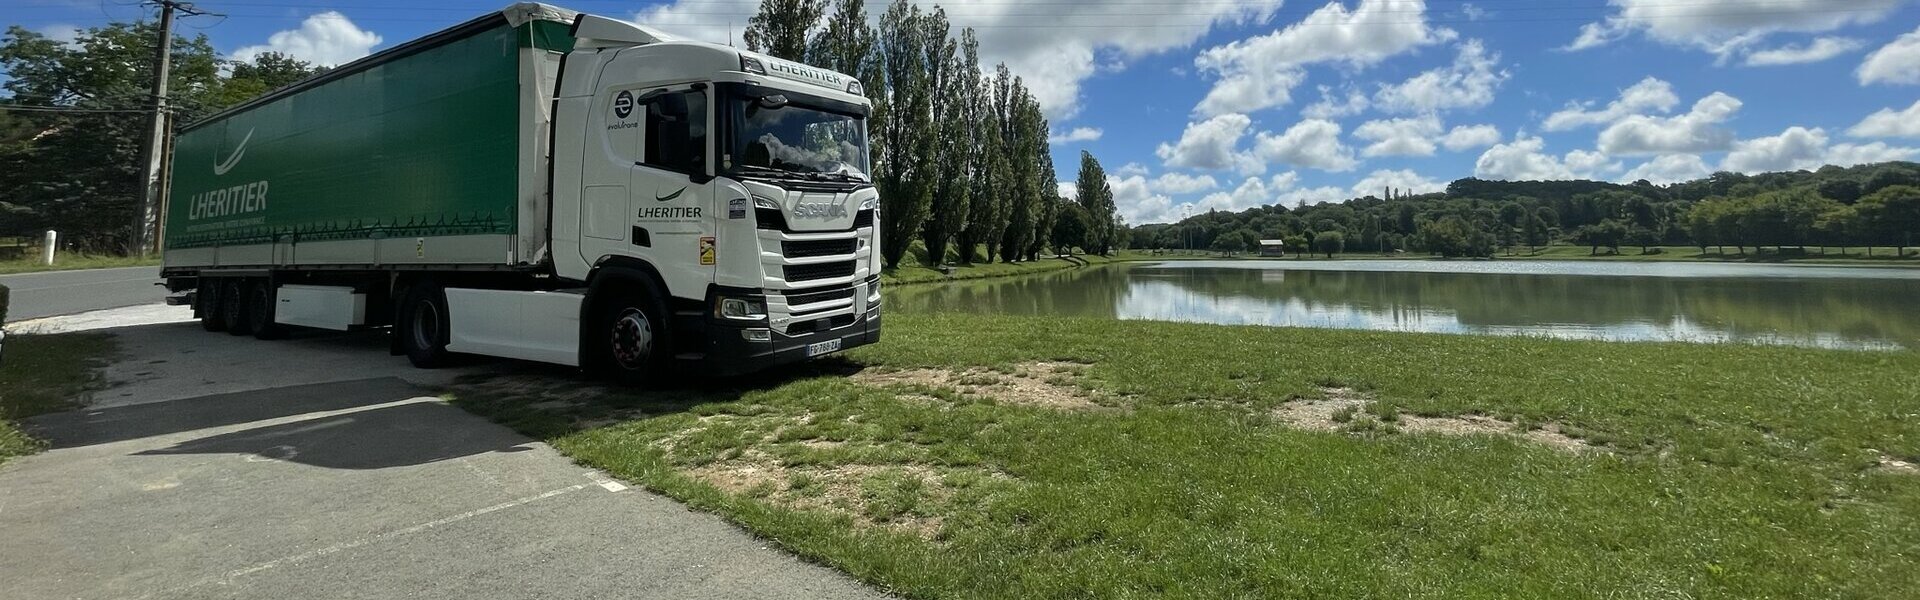 Transports Lheritier - Transport routier national dans le Cantal